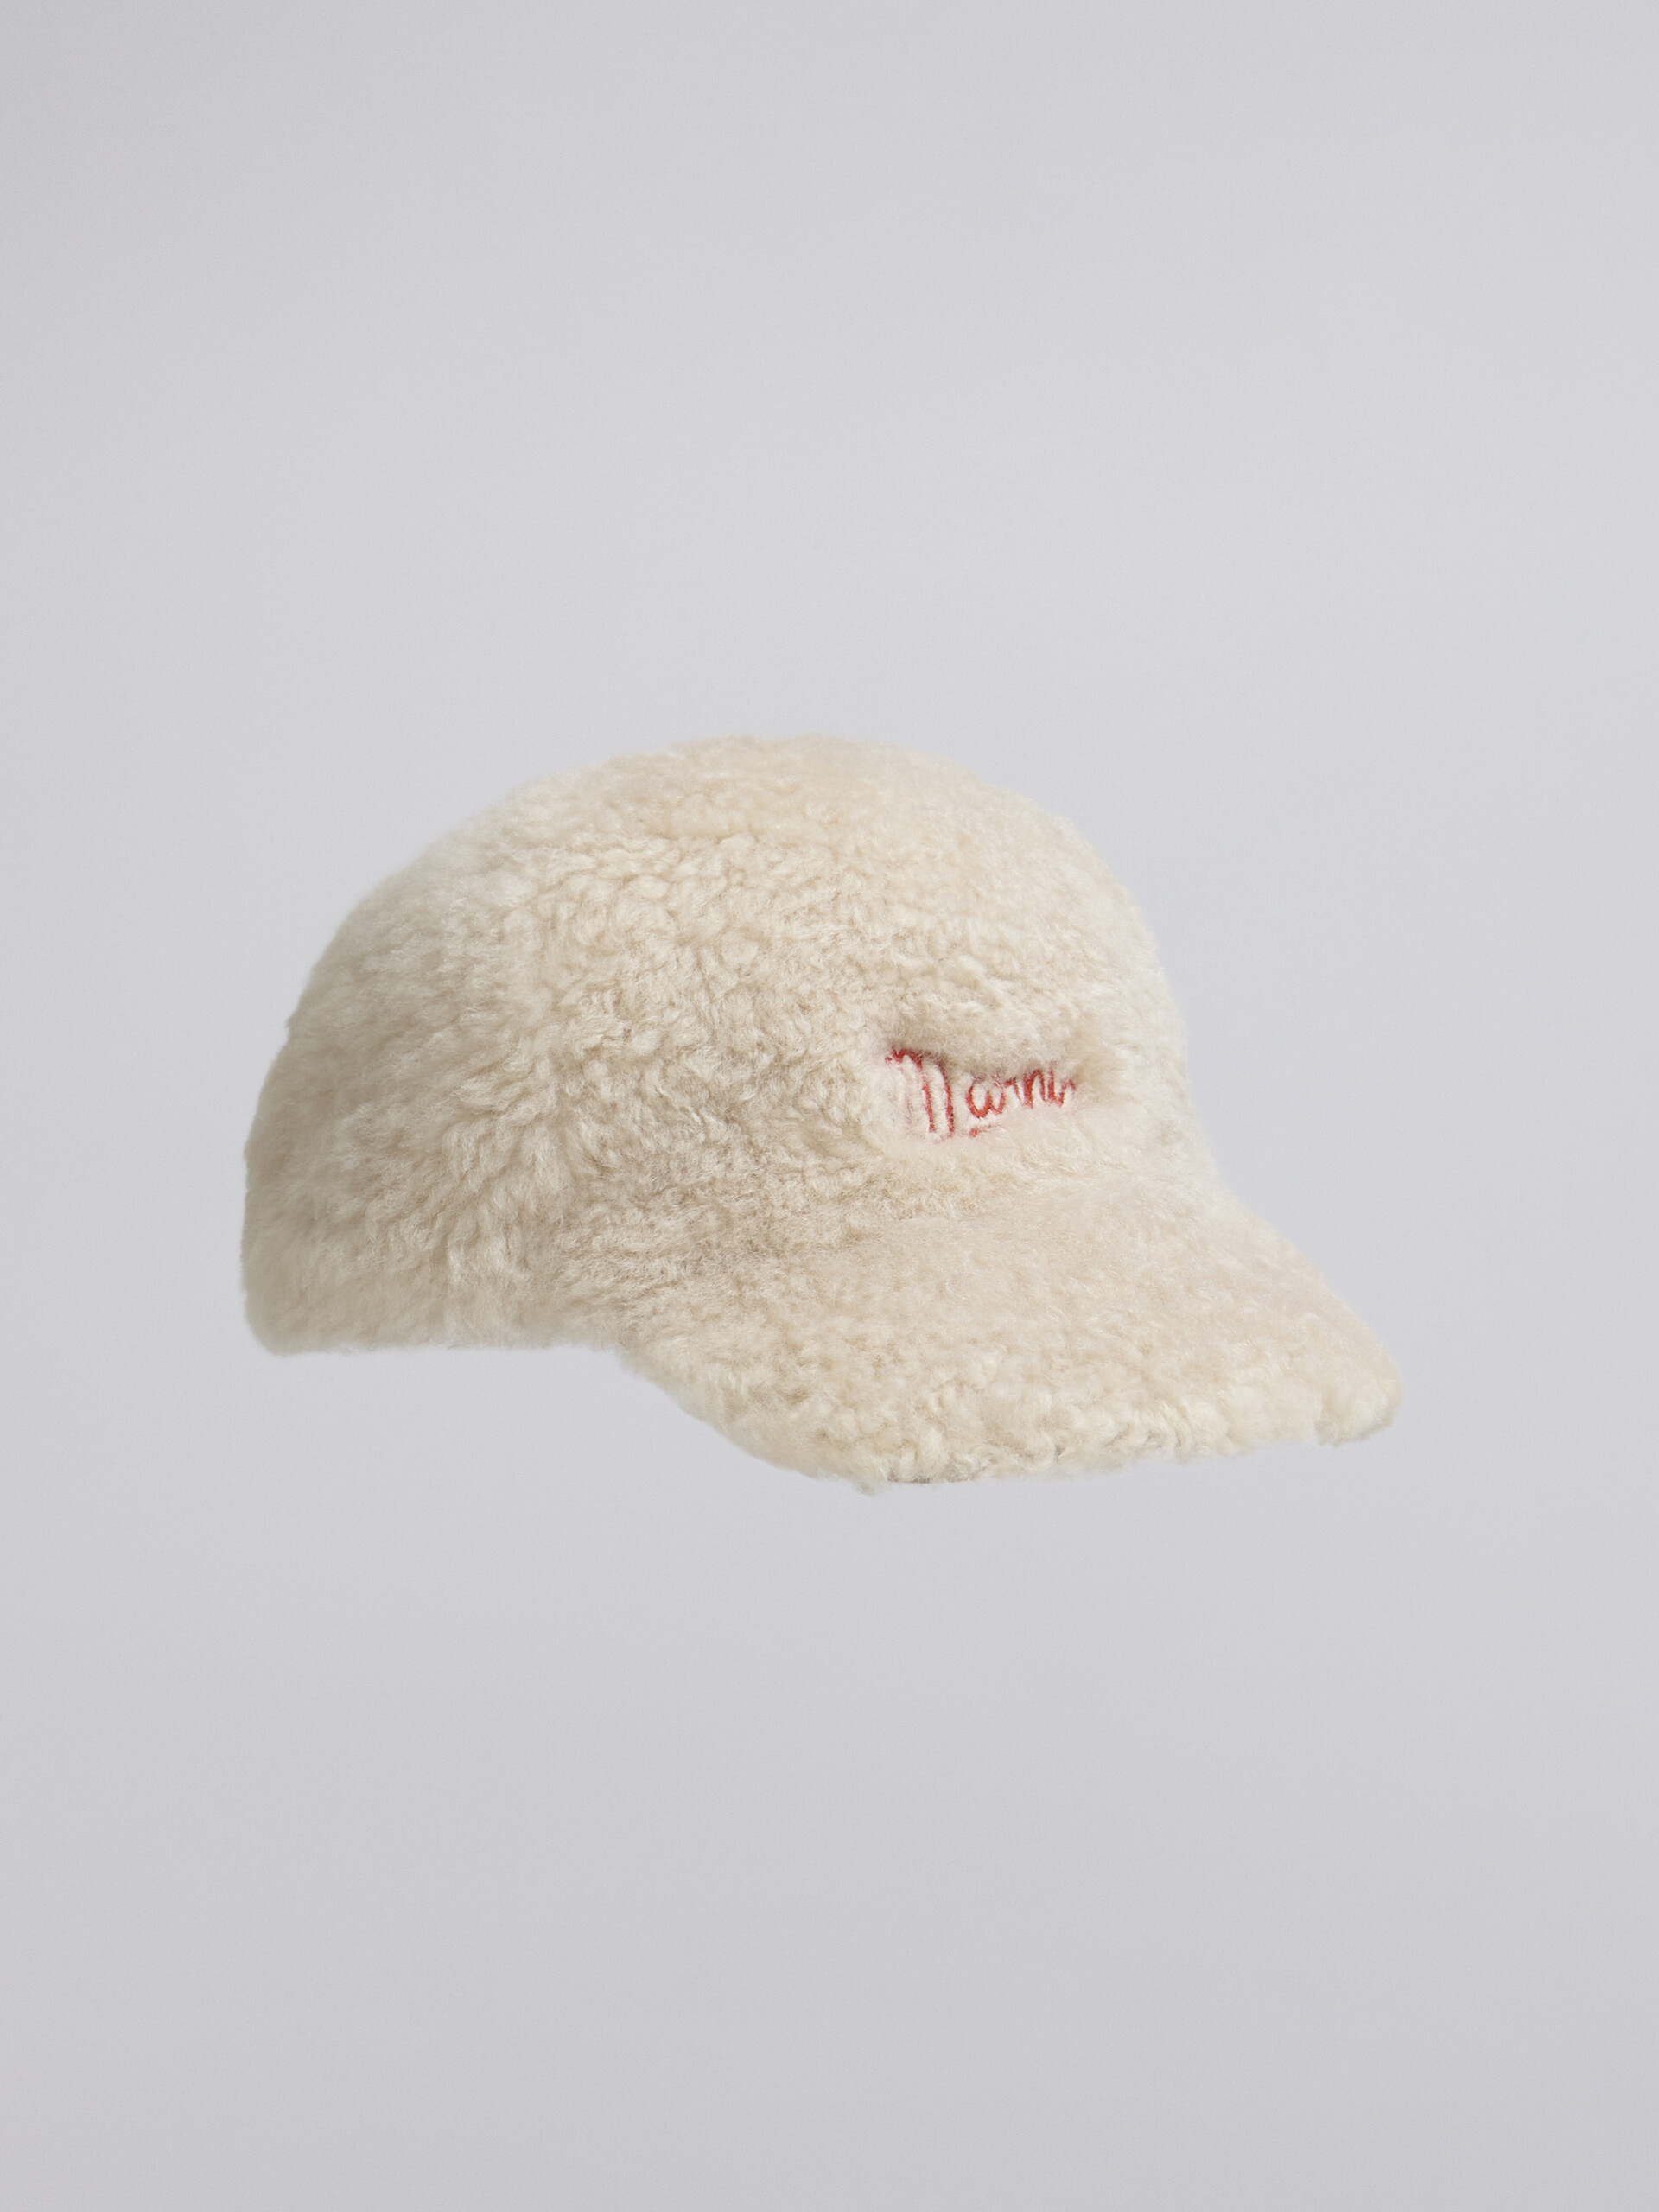 Berretto in montone con logo Marni ricamato a contrasto - Cappelli - Image 1